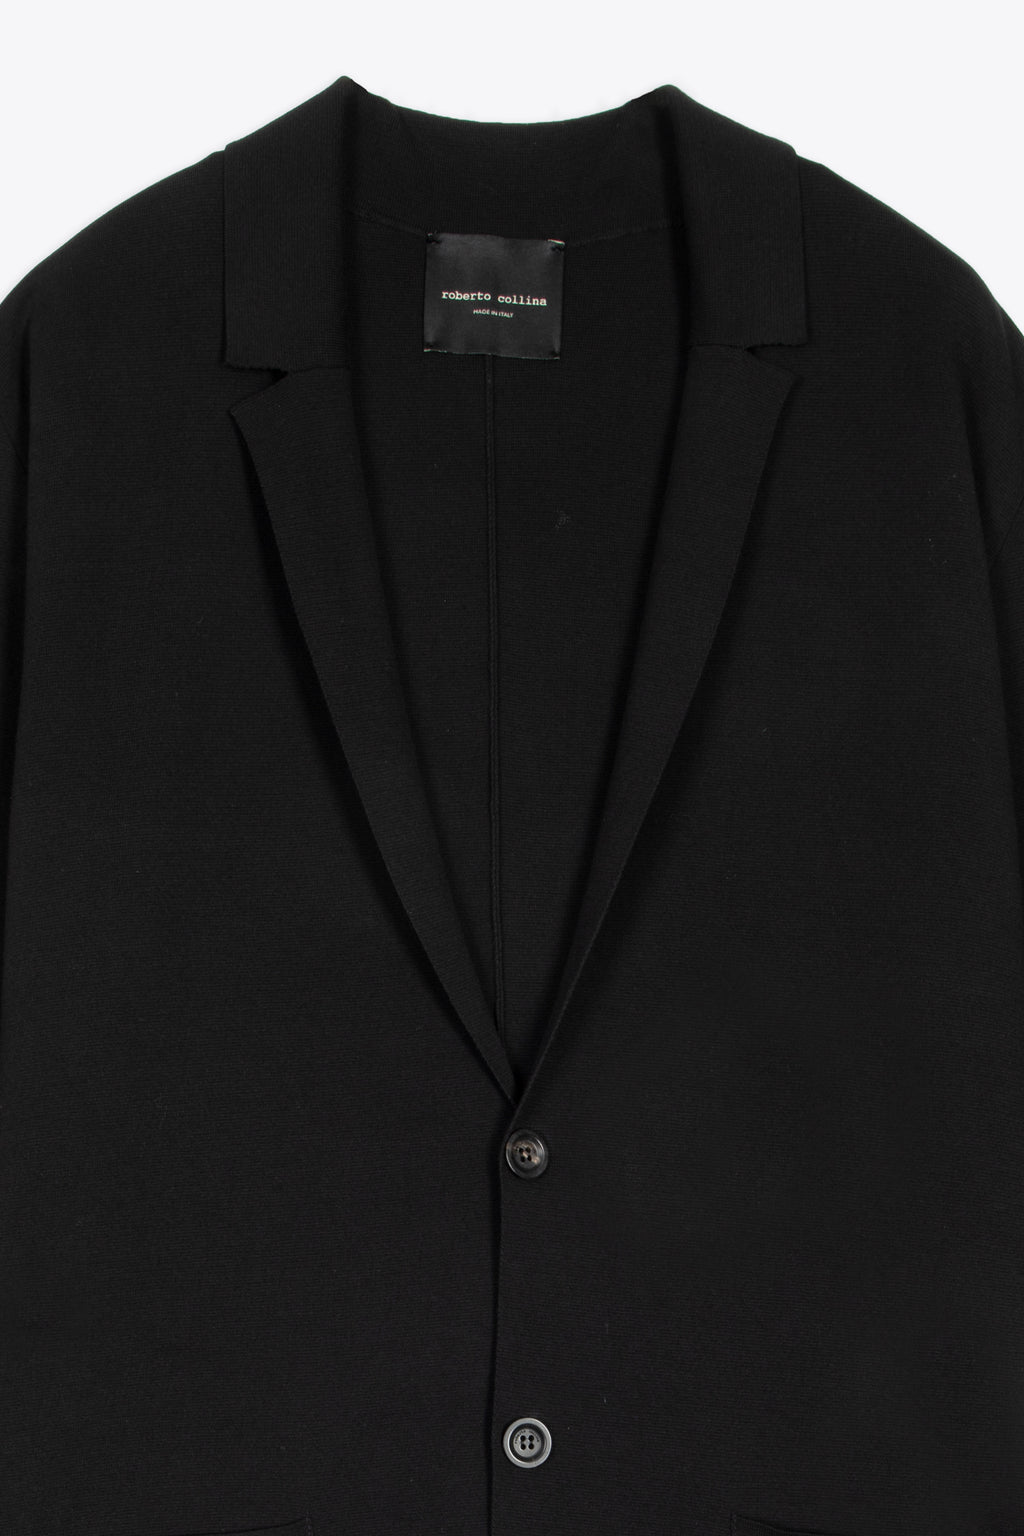 alt-image__Black-cotton-knit-blazer-with-patch-pockets